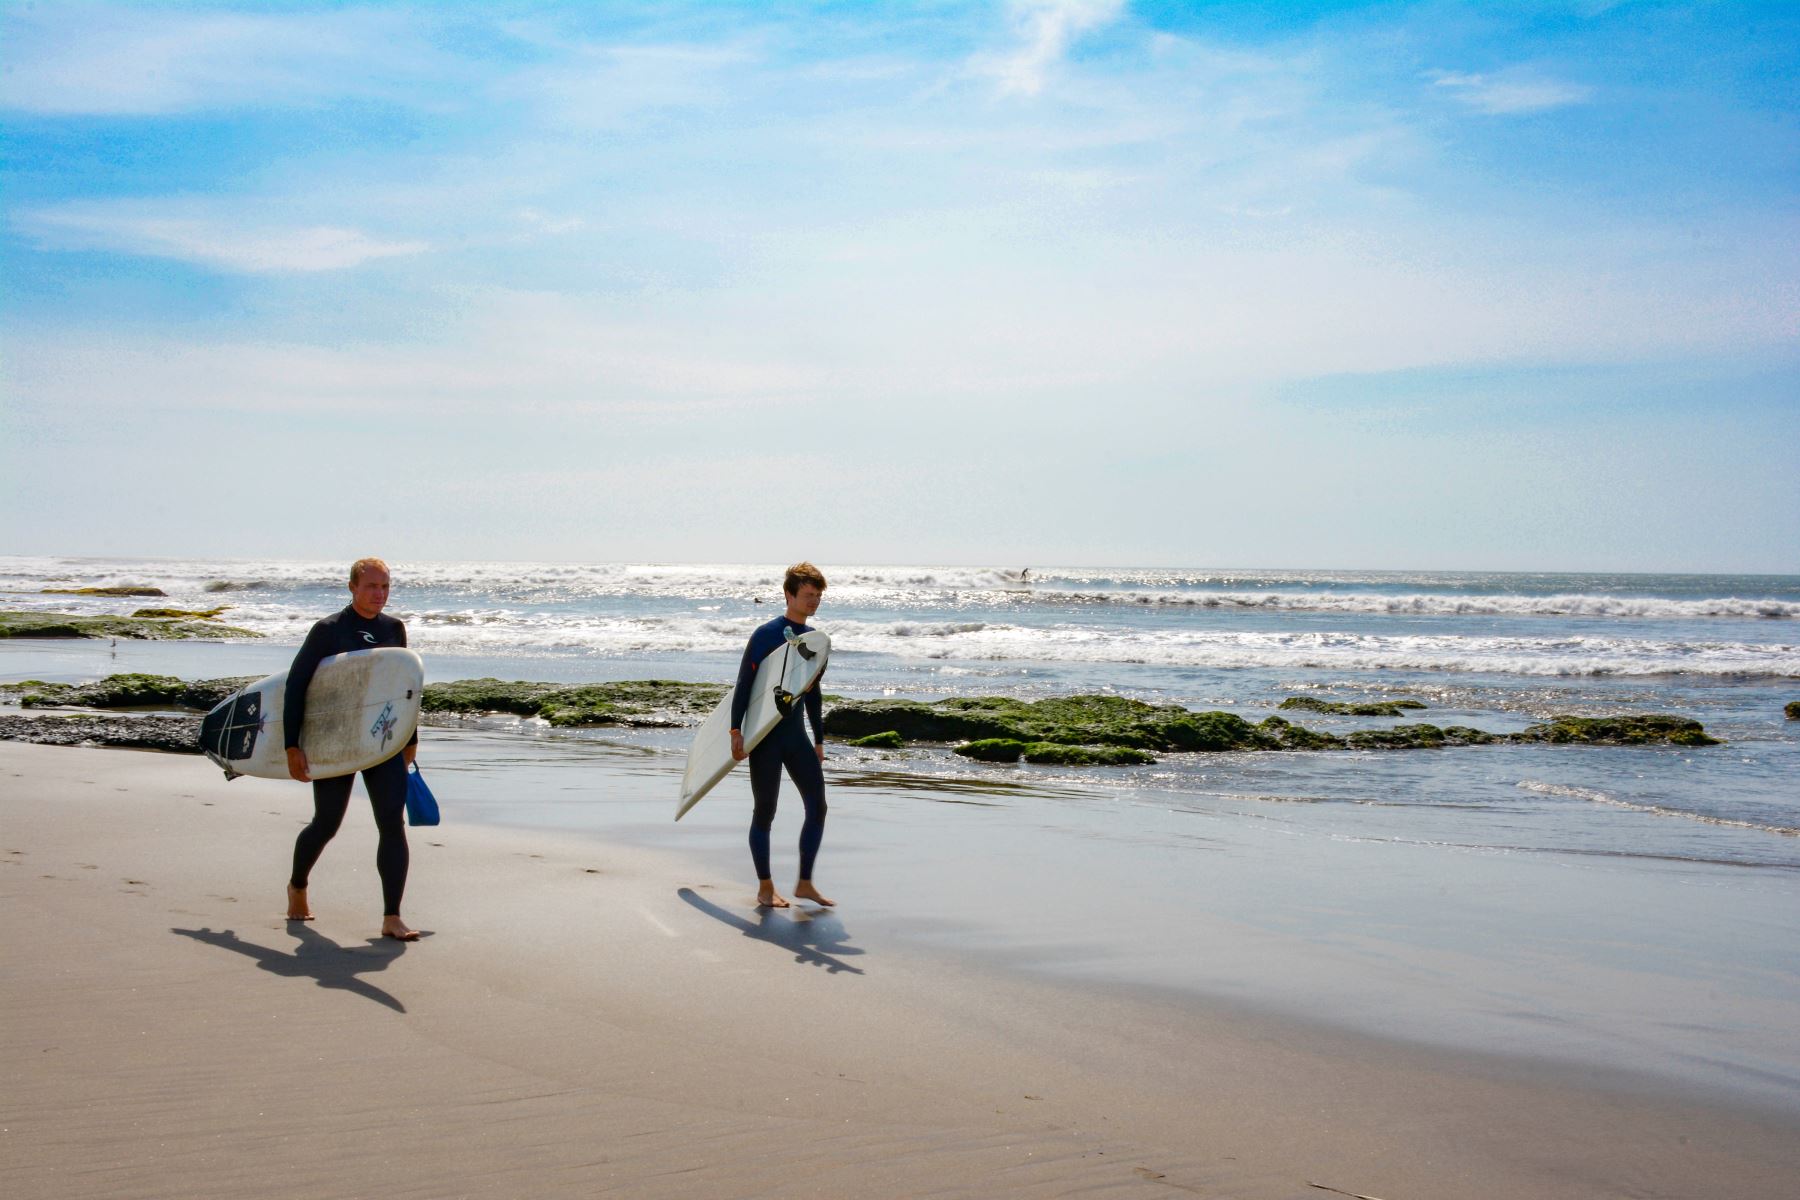 El Puerto Malabrigo, ubicado a hora y media de Trujillo, es el paraíso para los surfistas nacionales y extranjeros. En sus aguas se forma la ola izquierda más grande del mundo, con ondas que forman tubos conocidos como ‘olas chicameras’.
Foto: Mincetur